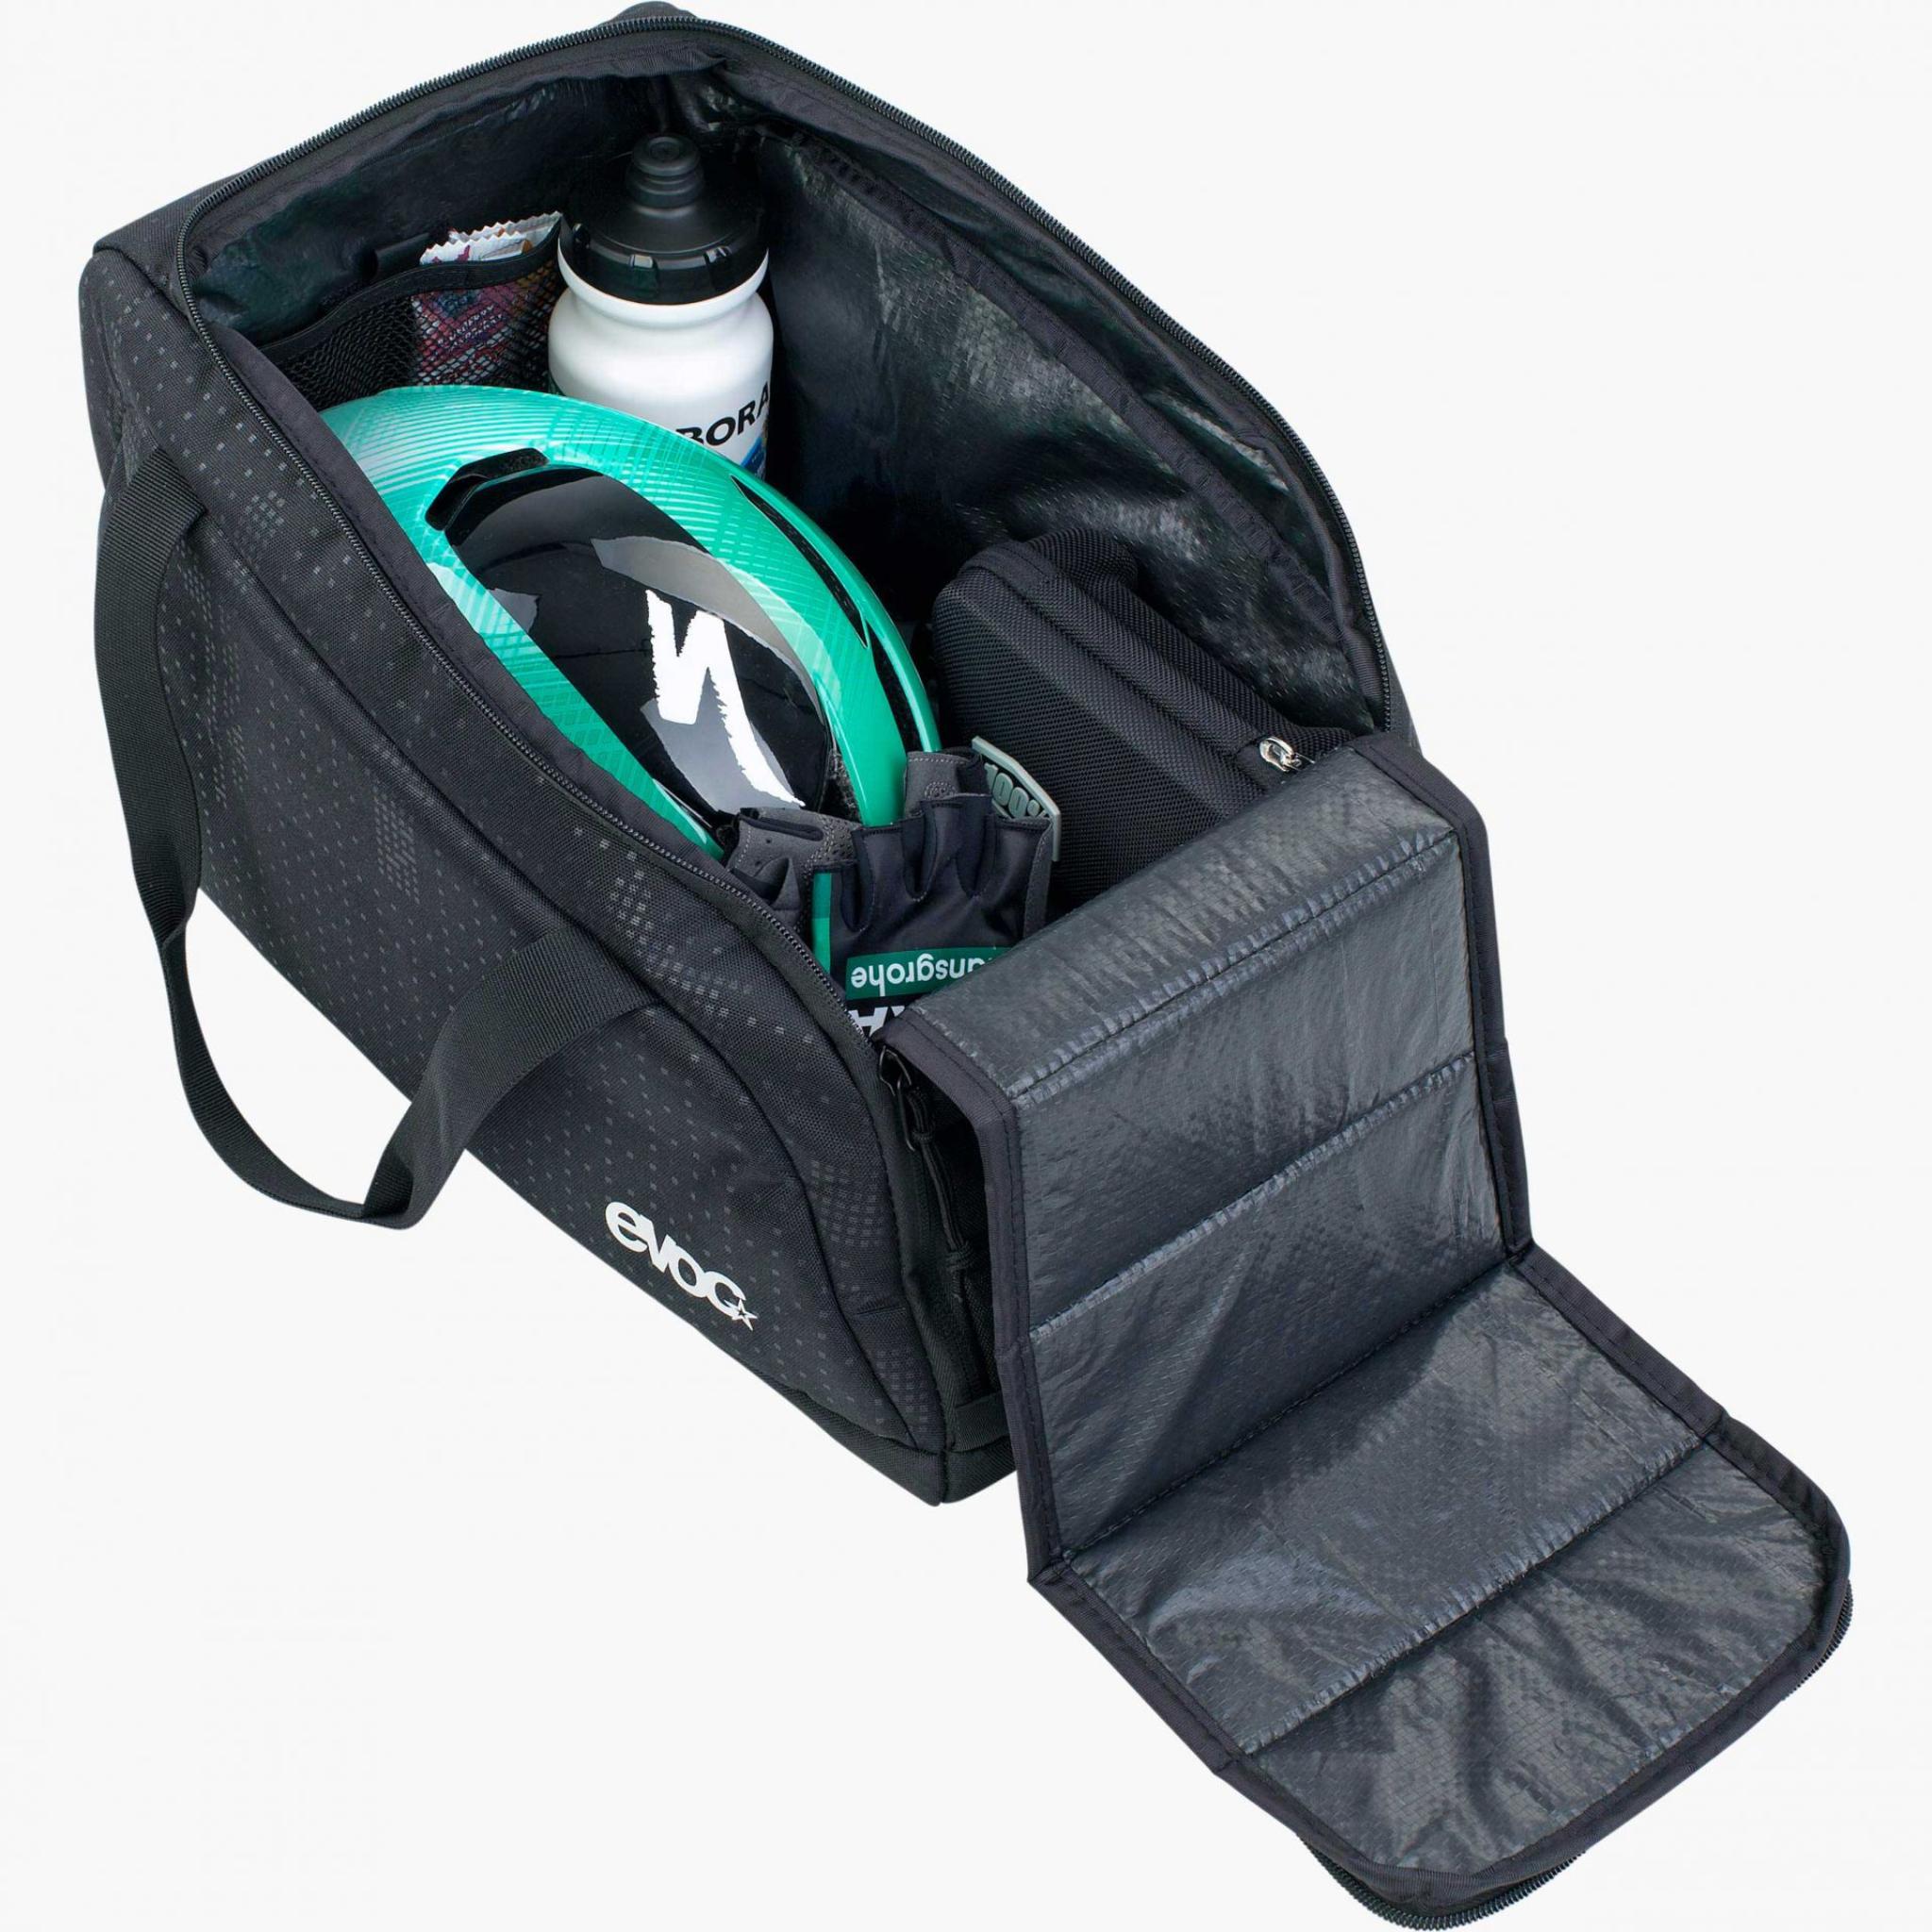 EVOC Gear Bag 20